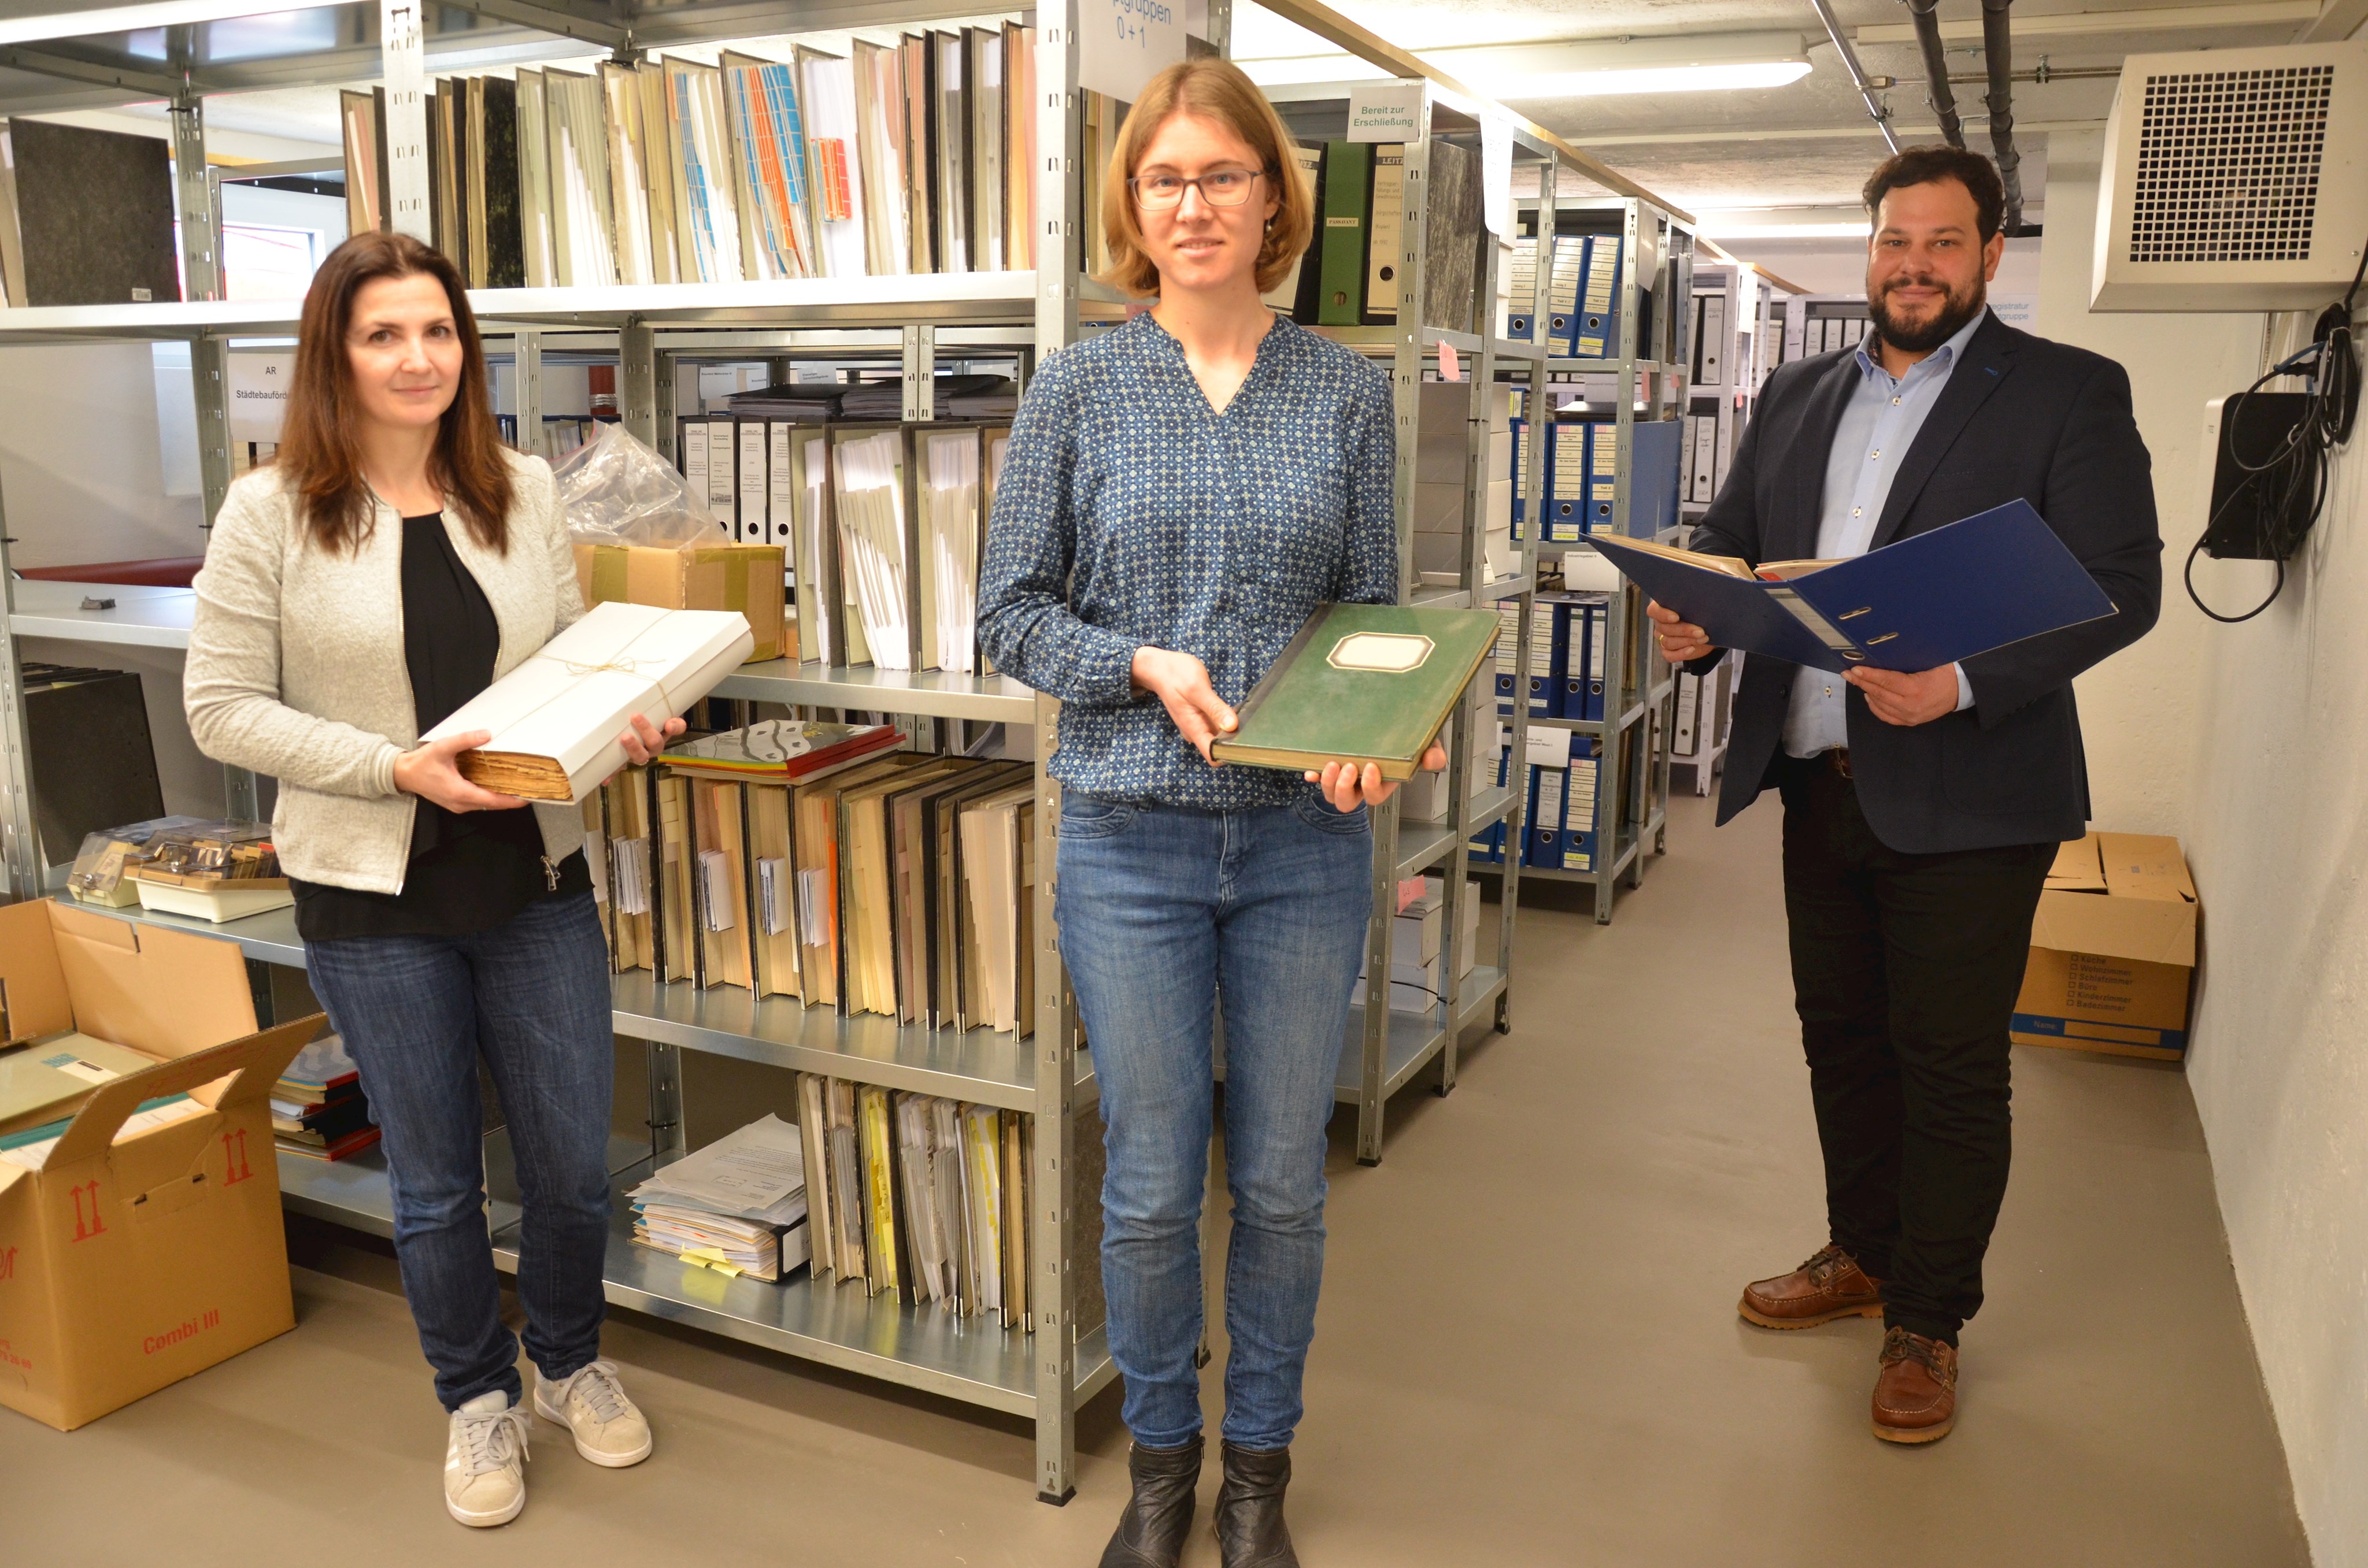 Archivpflege im Landkreis wächst weiter